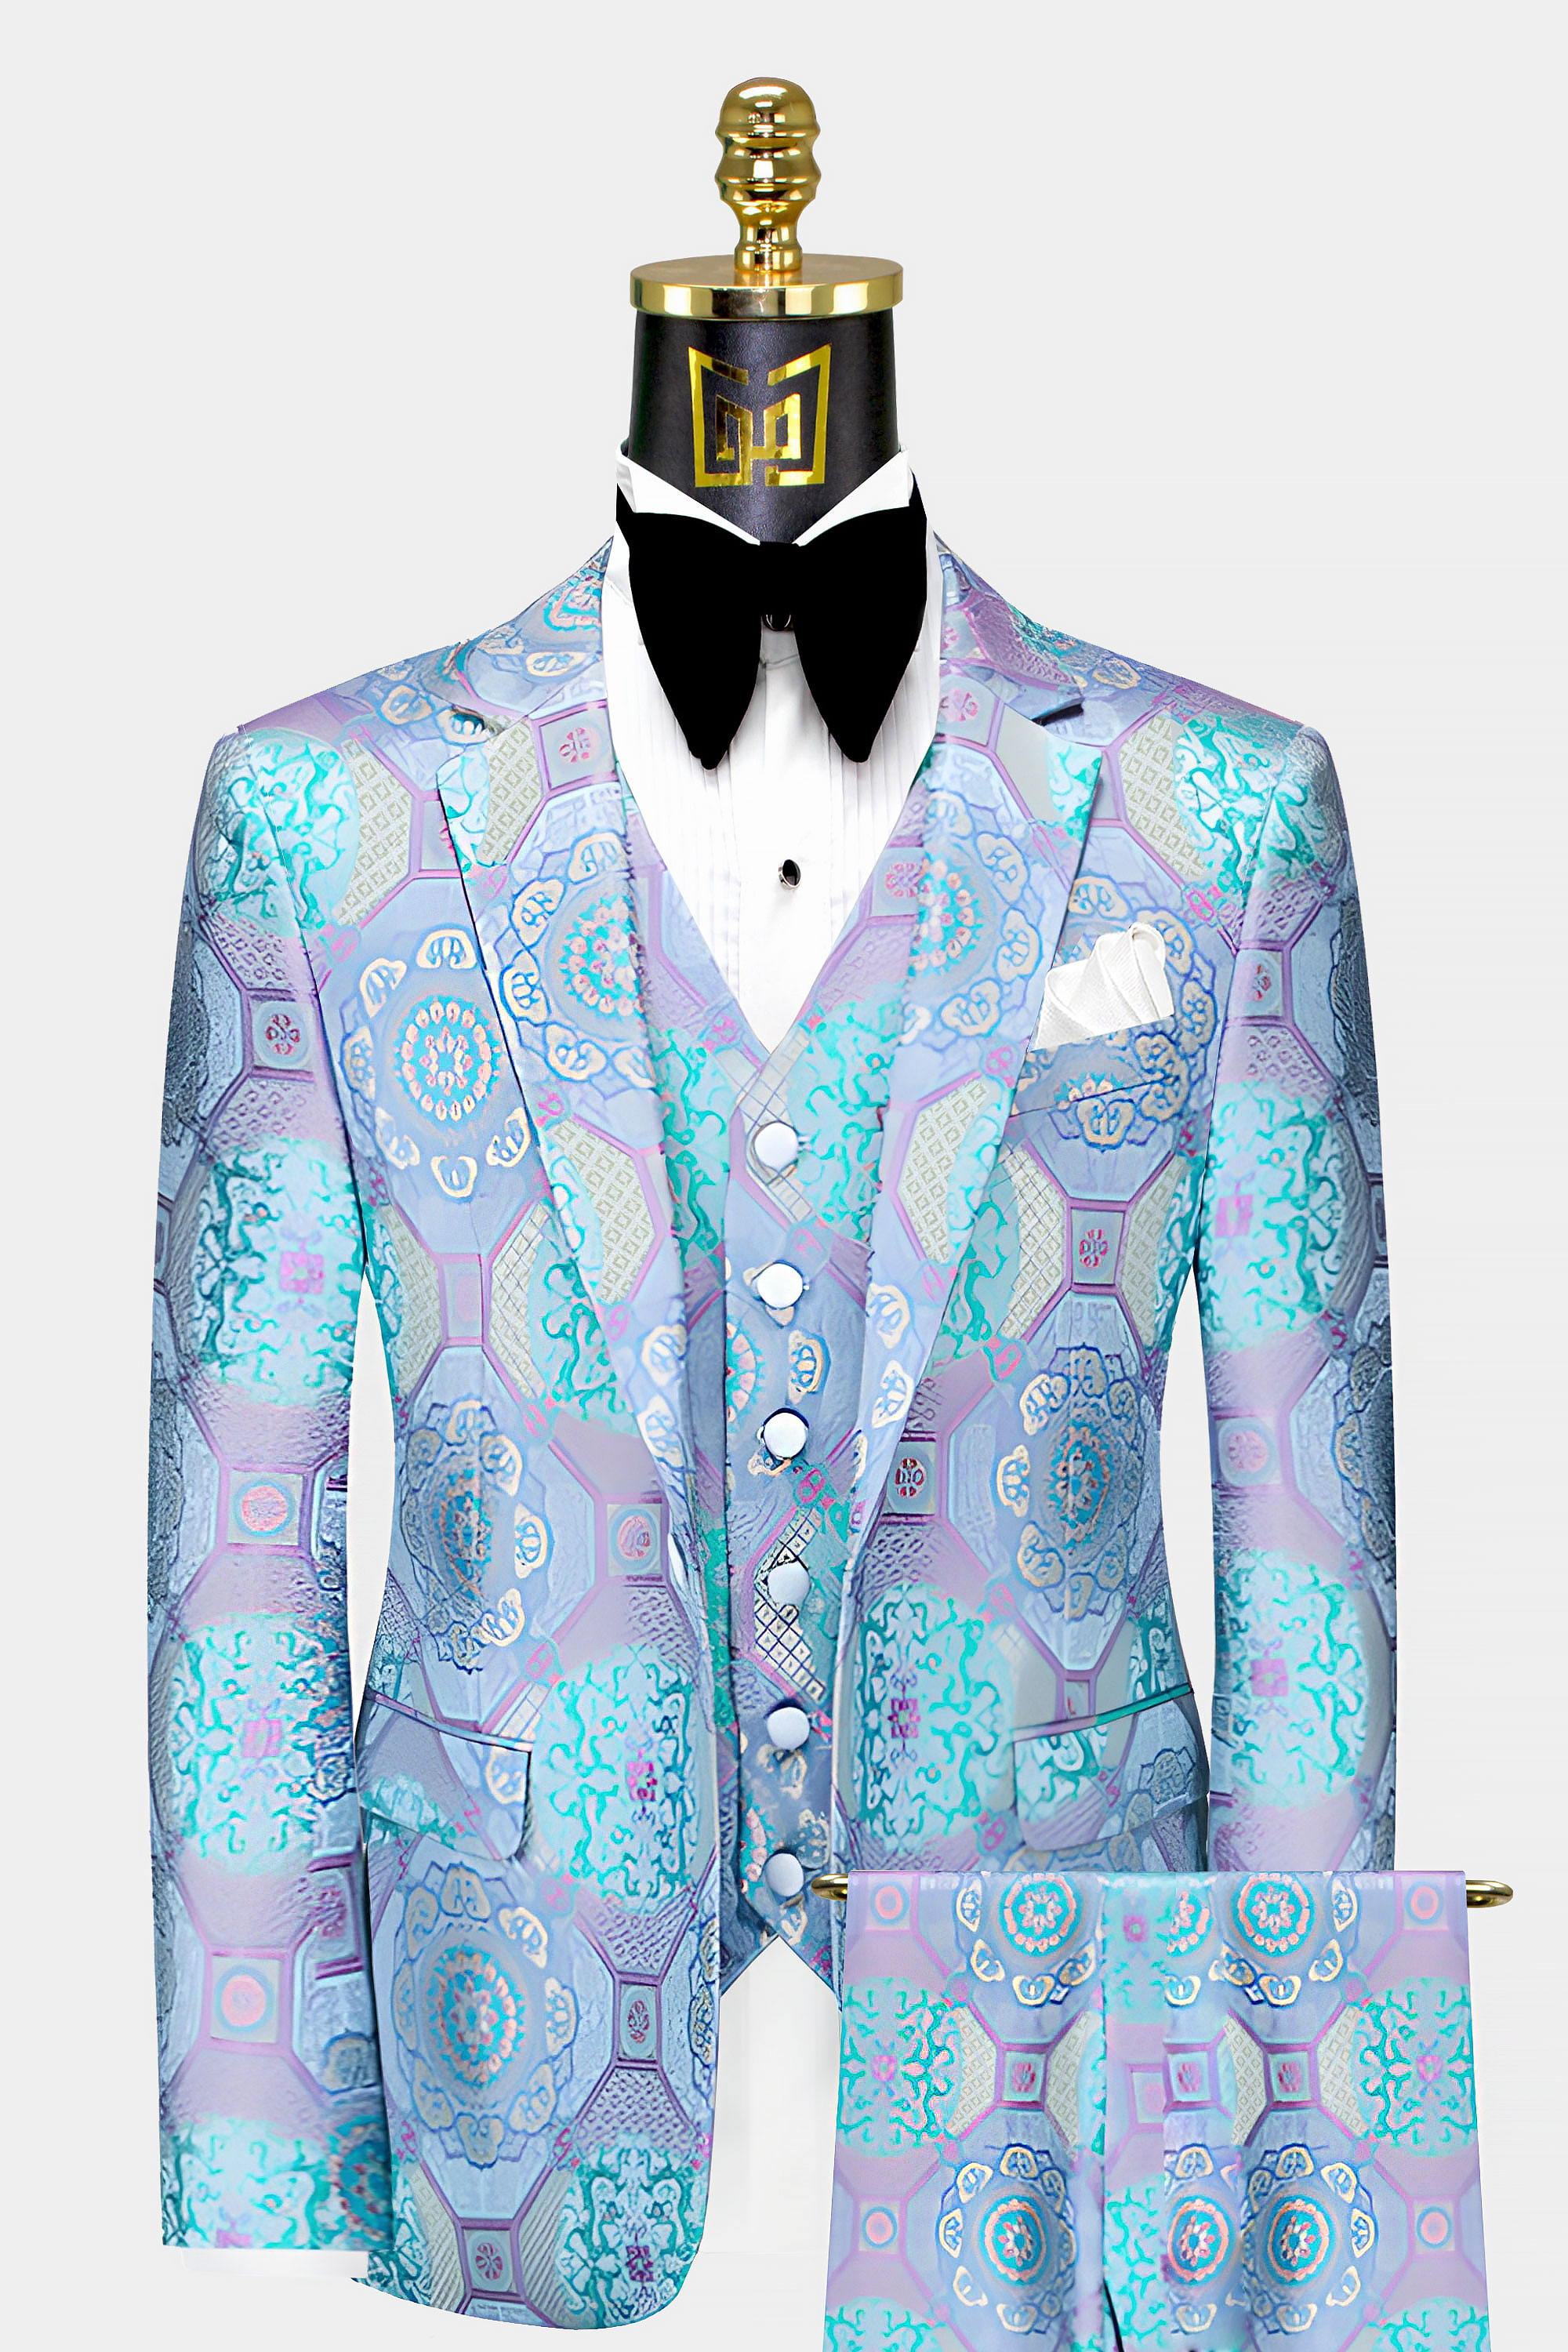 Purple-and-Turquoise-Tuxedo-Suit-Groom-Wedding-Prom-Suit-For-Men-from-Gentlemansguru.com